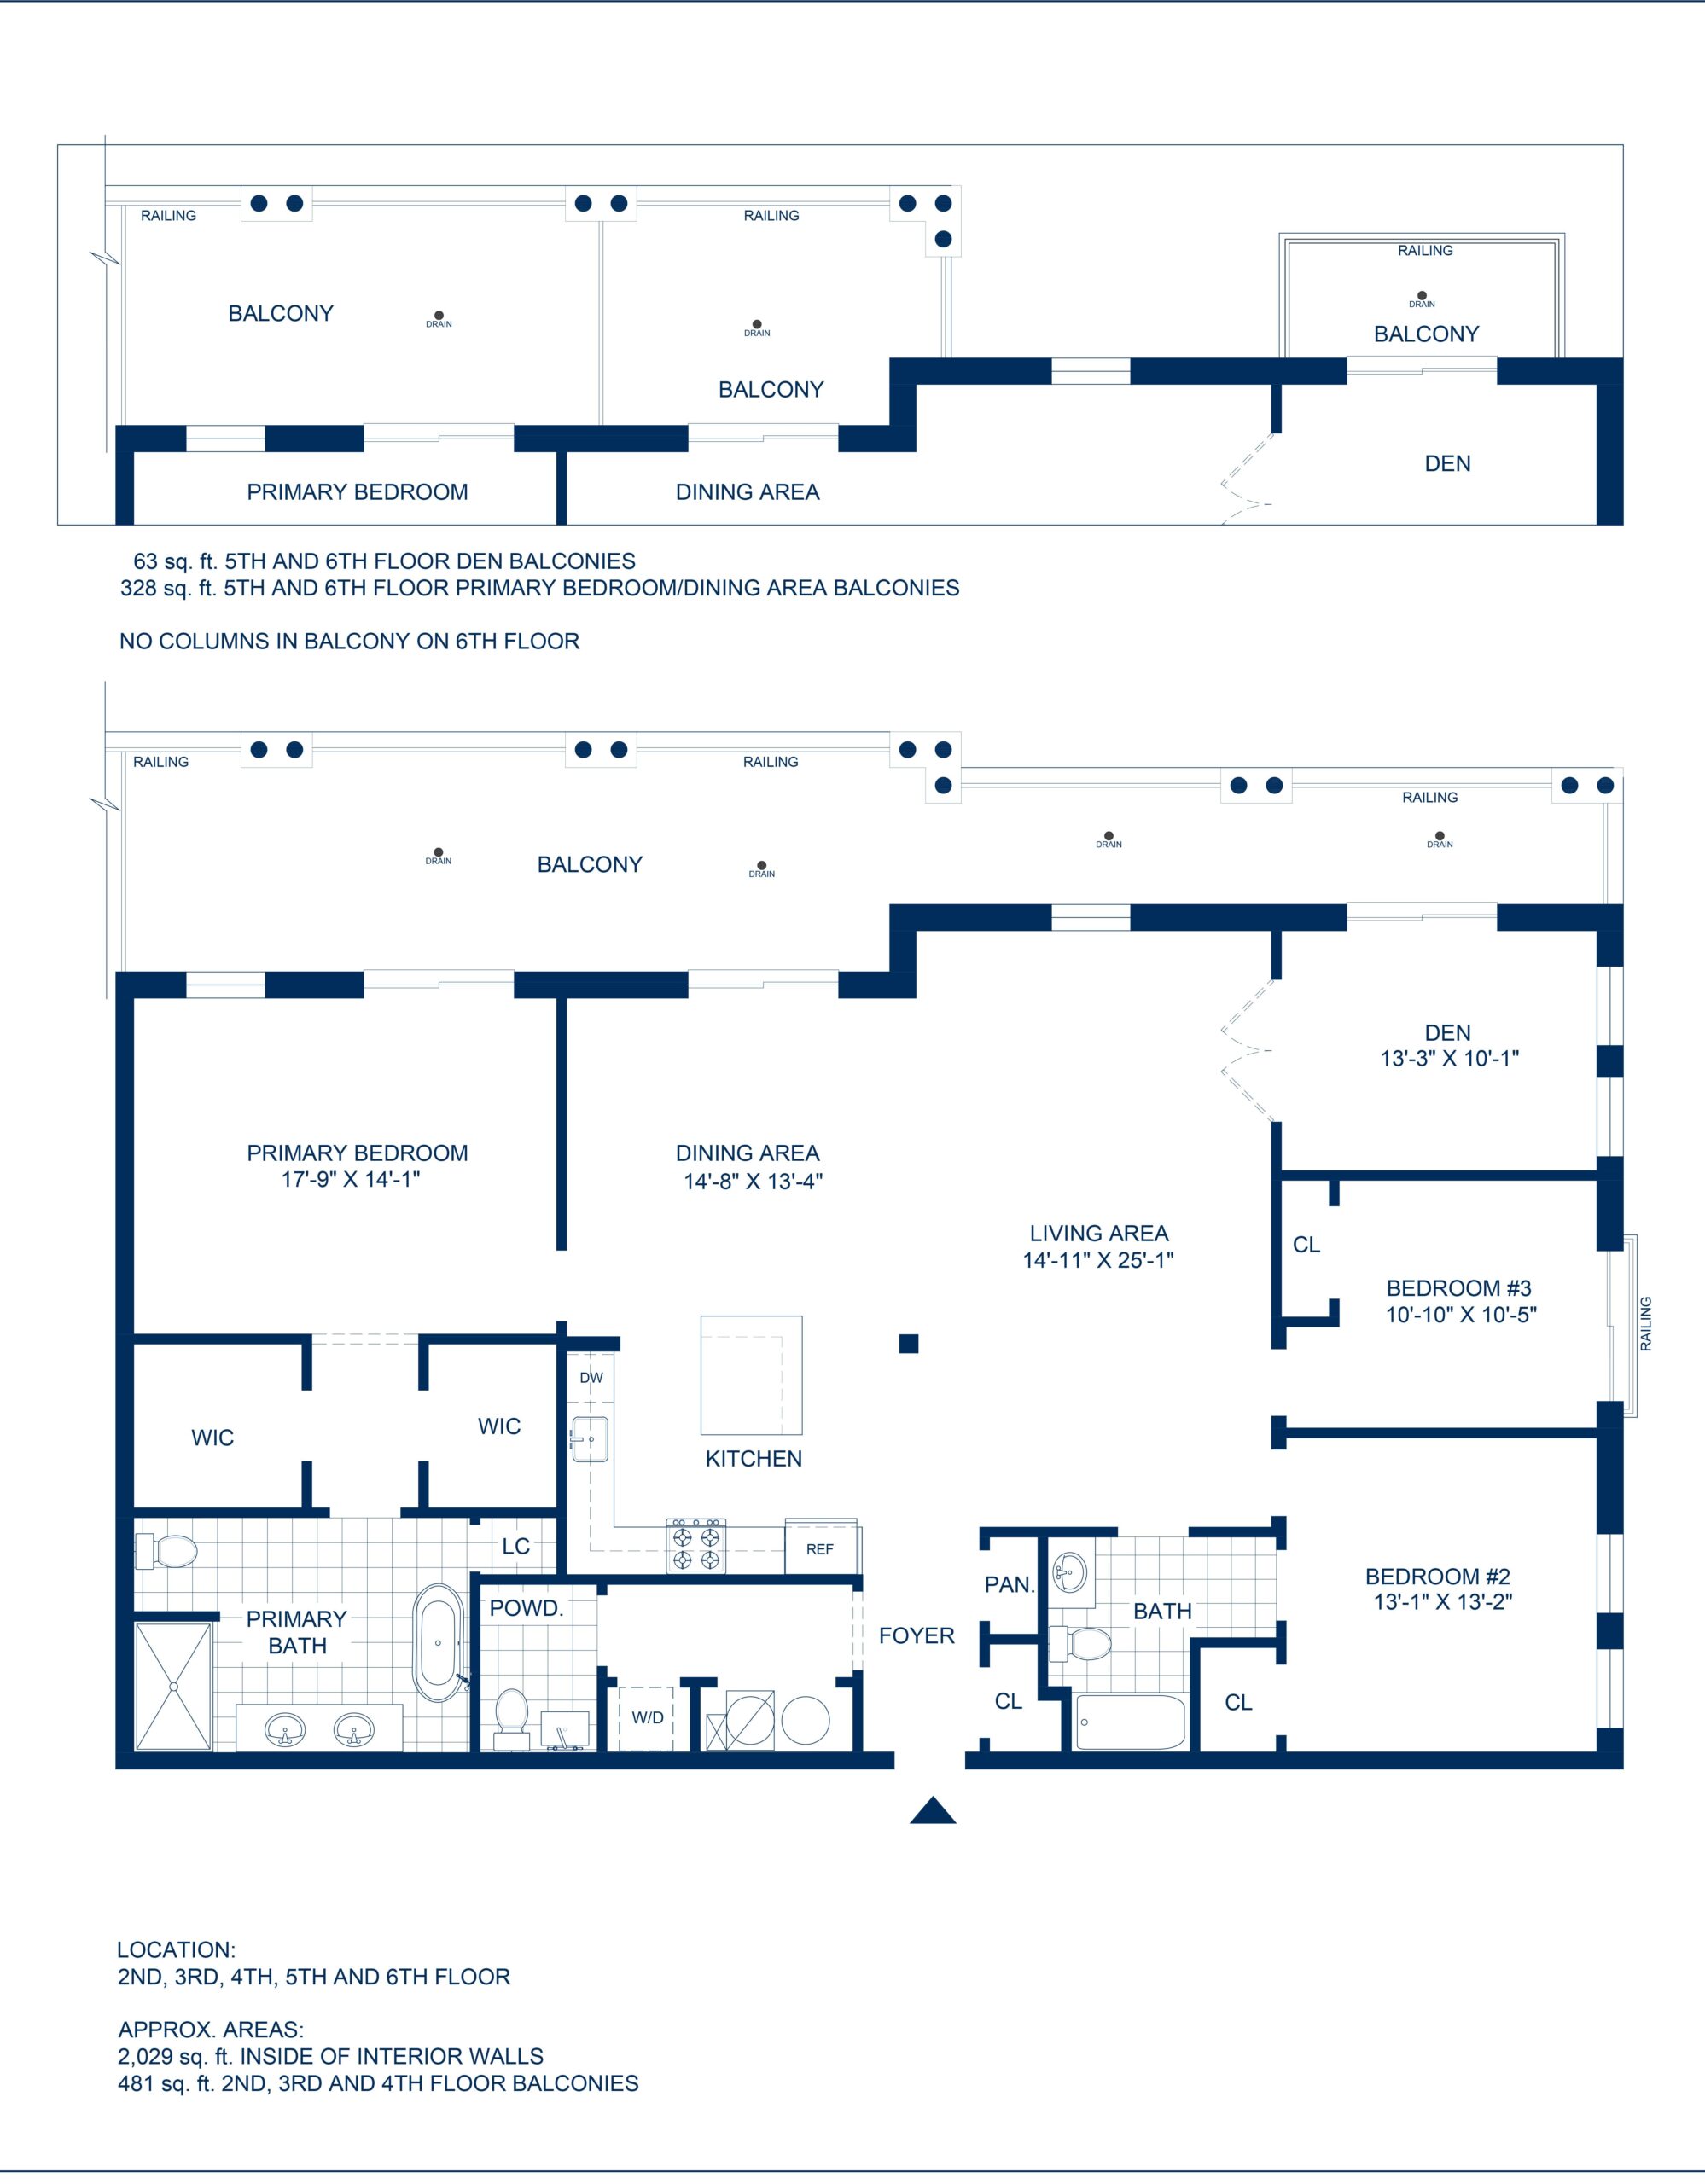 Adelphi Residences Floor Plan - 3 Bedroom - View 1